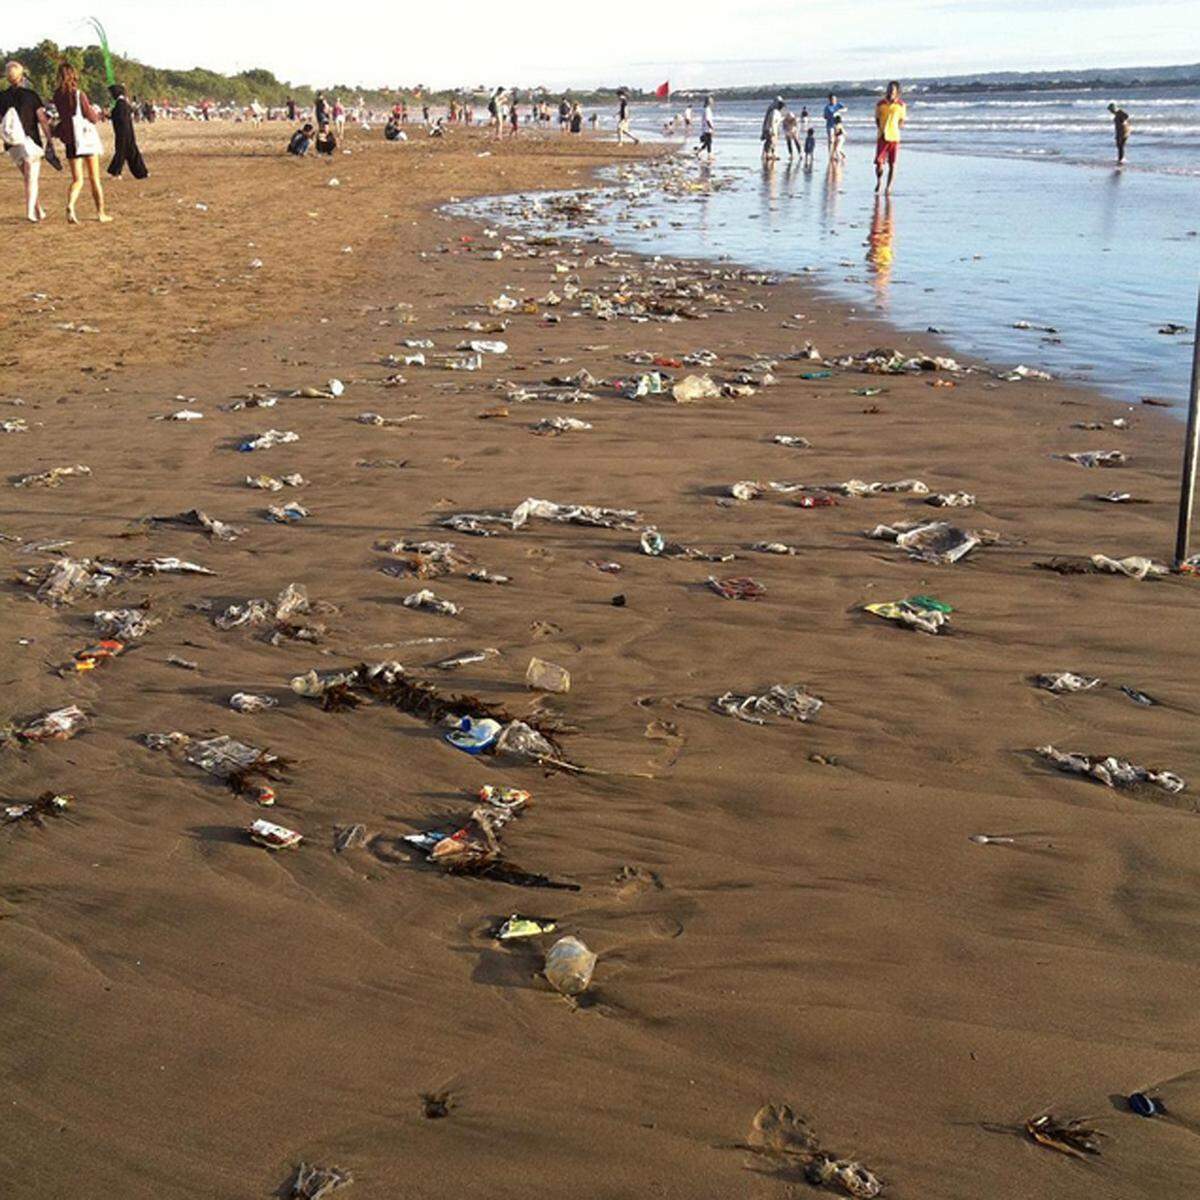 Expedia Australia hat in einer Umfrage zehn No-Gos für den Strand herausgefunden. Mit 52 Prozent stehen Badegäste, die ihren Müll liegen lassen, an erster Stelle. Dies sorgt nicht nur für wenig Urlaubsstimmung, sondern kann mitunter auch Meerestiere gefährden.  